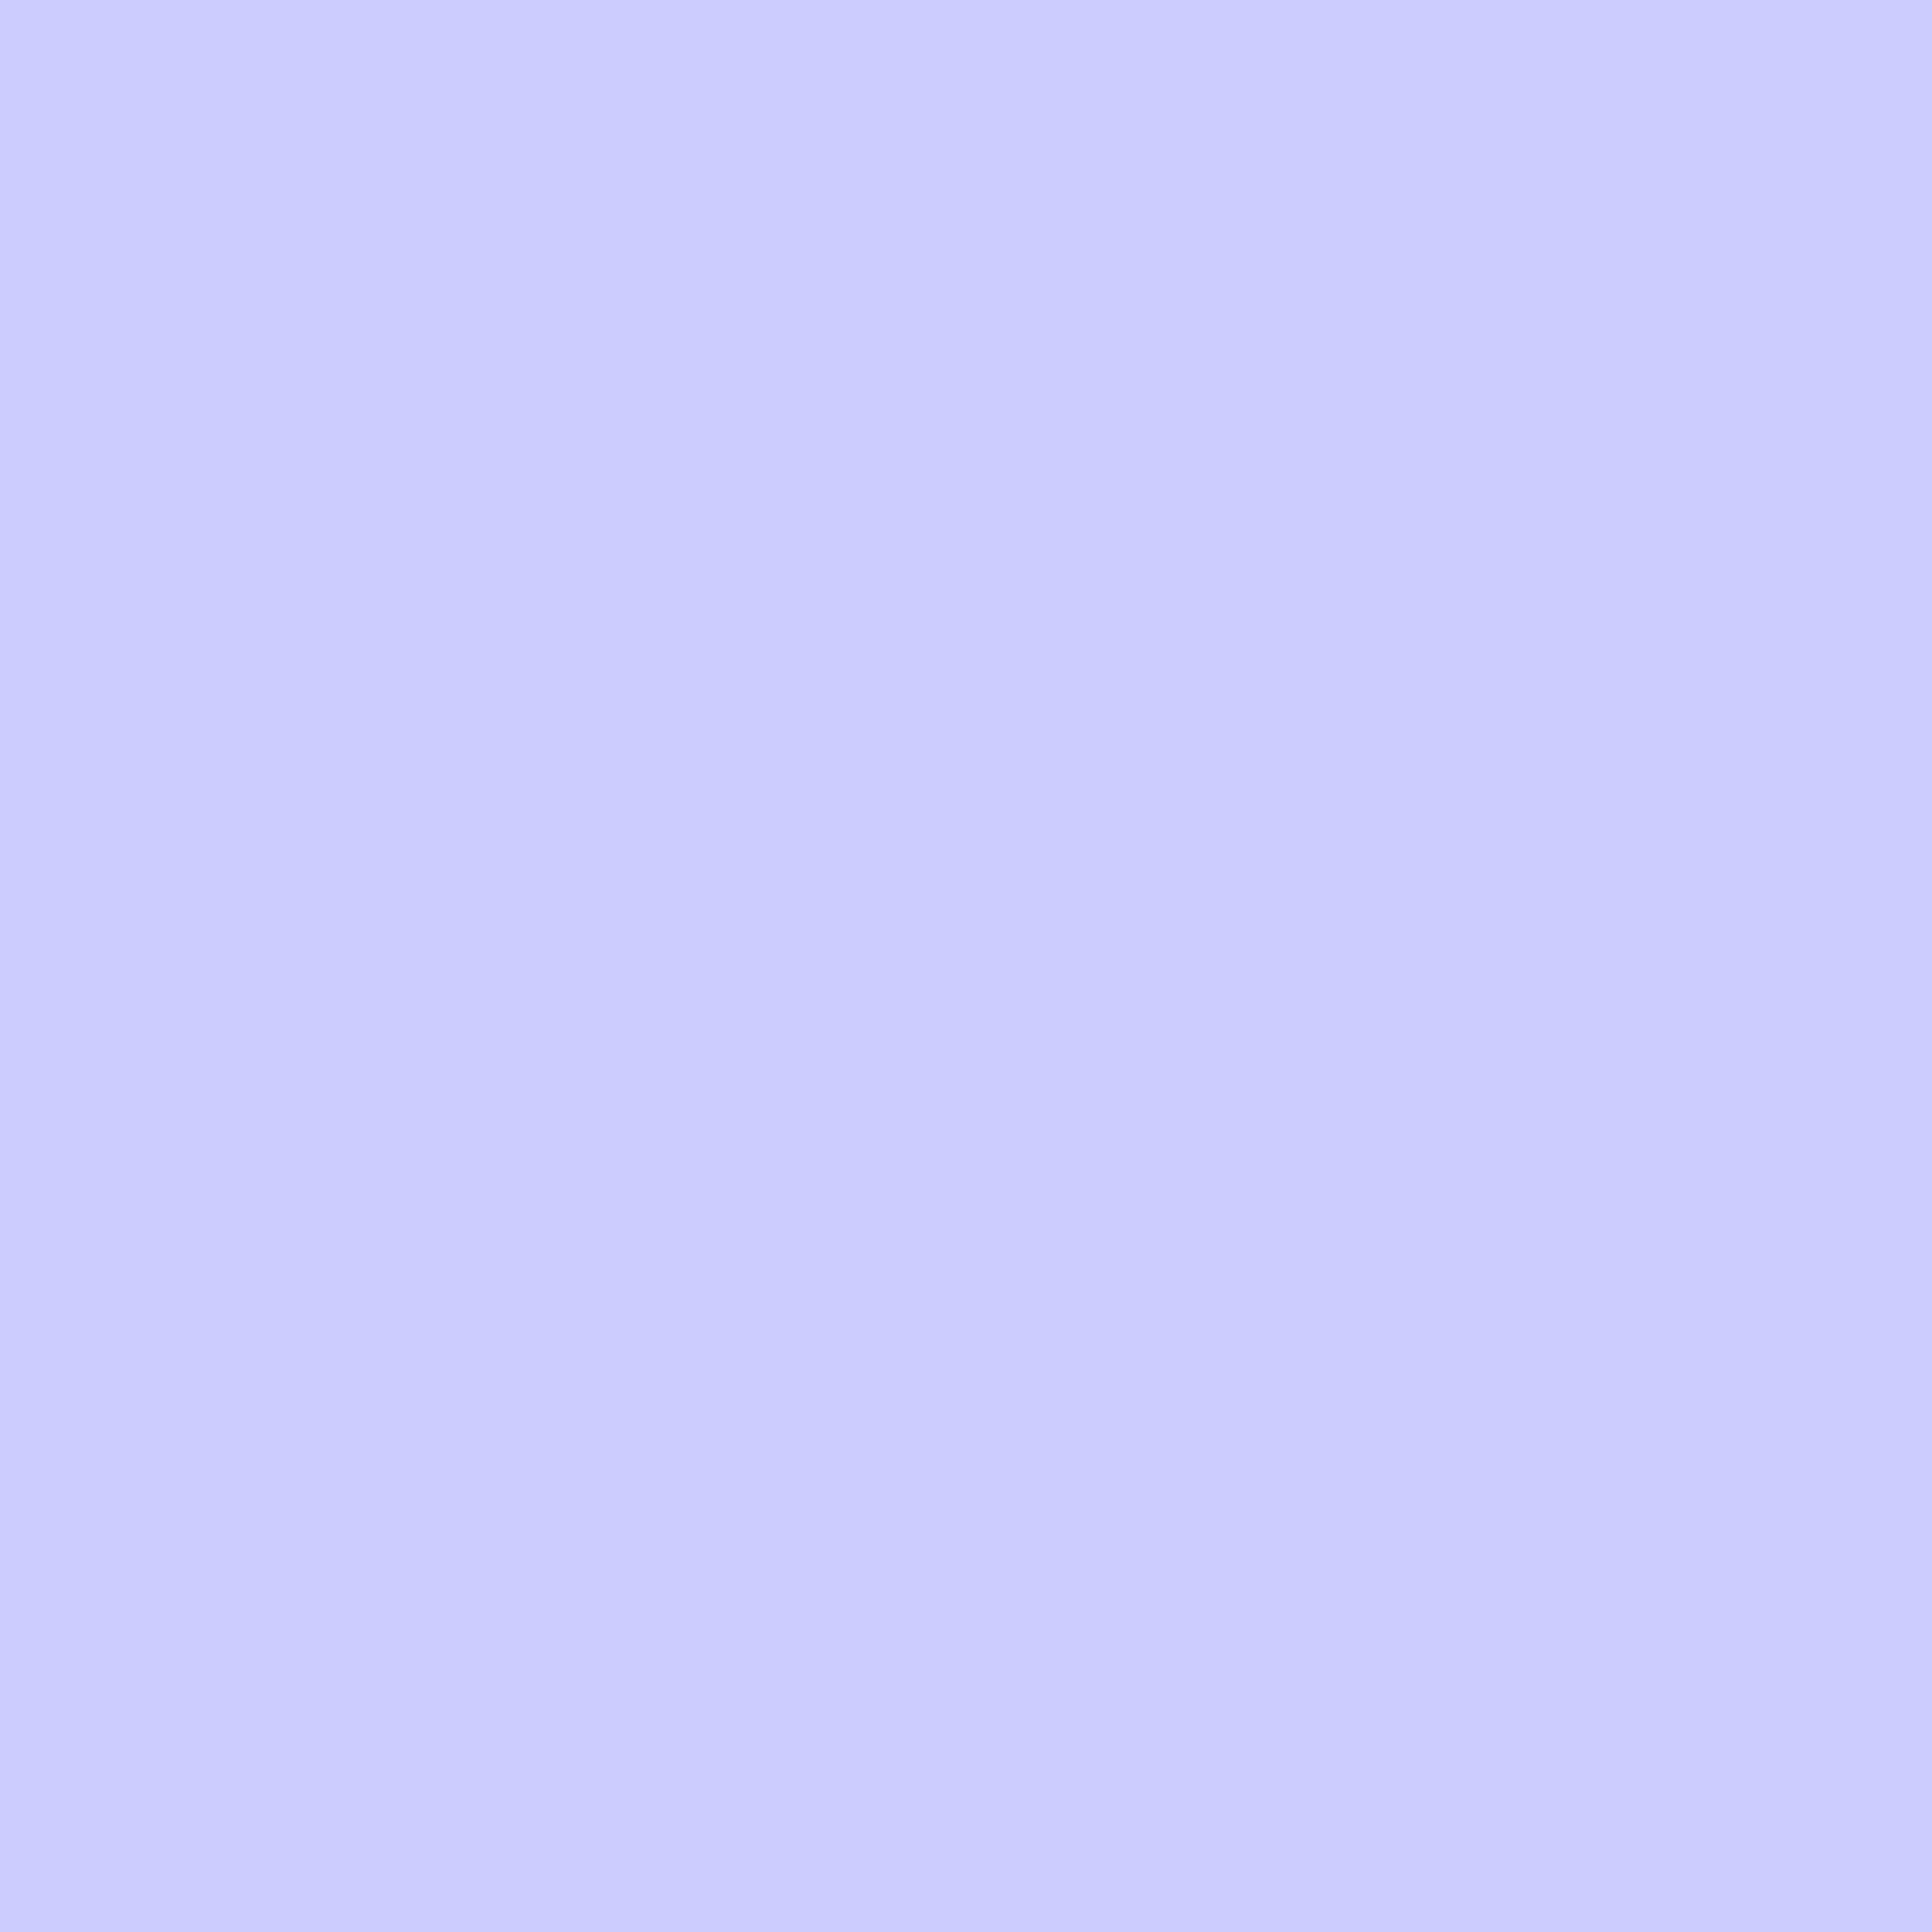 2732x2732 Lavender Blue Solid Color Background